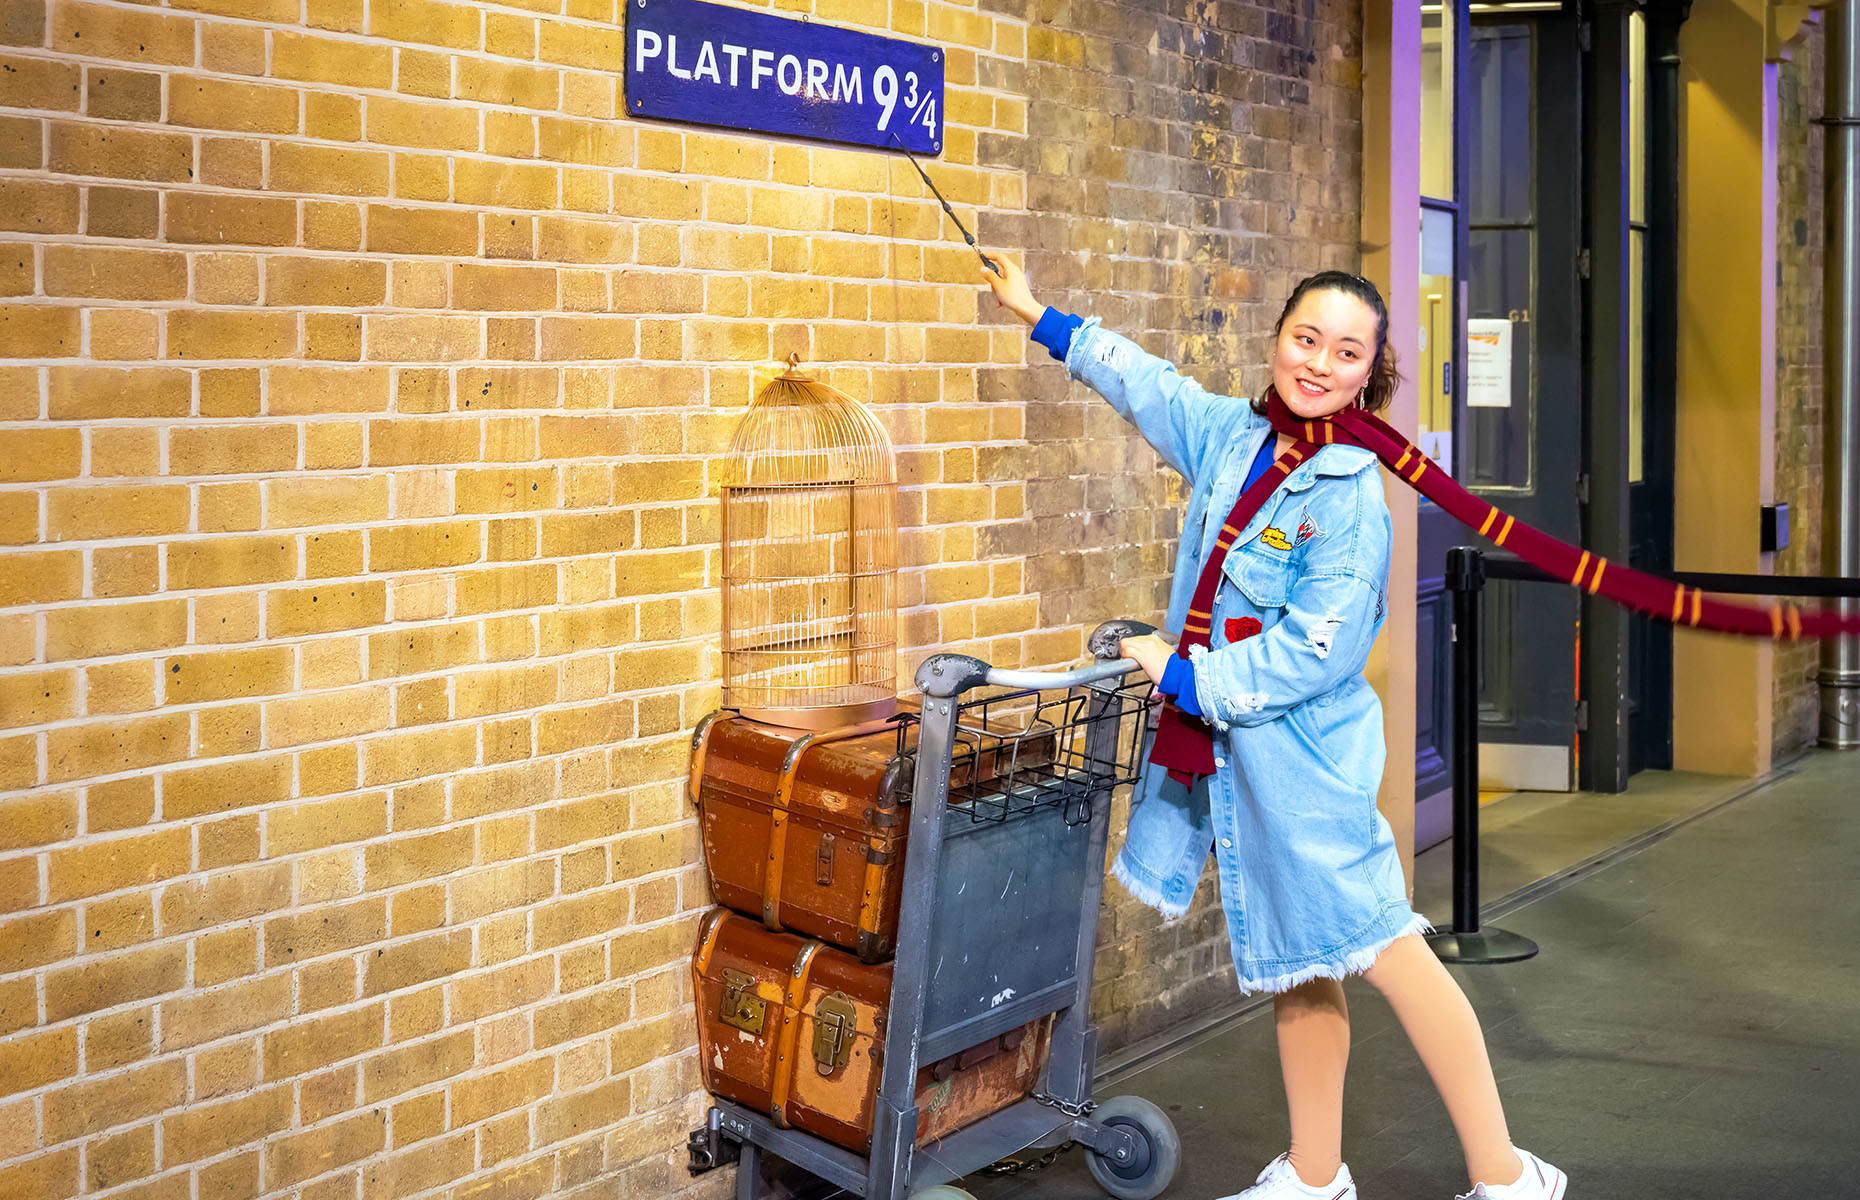 Platform 9 and 3 quarters at King's Cross station (Image: cowardlion/Shutterstock)